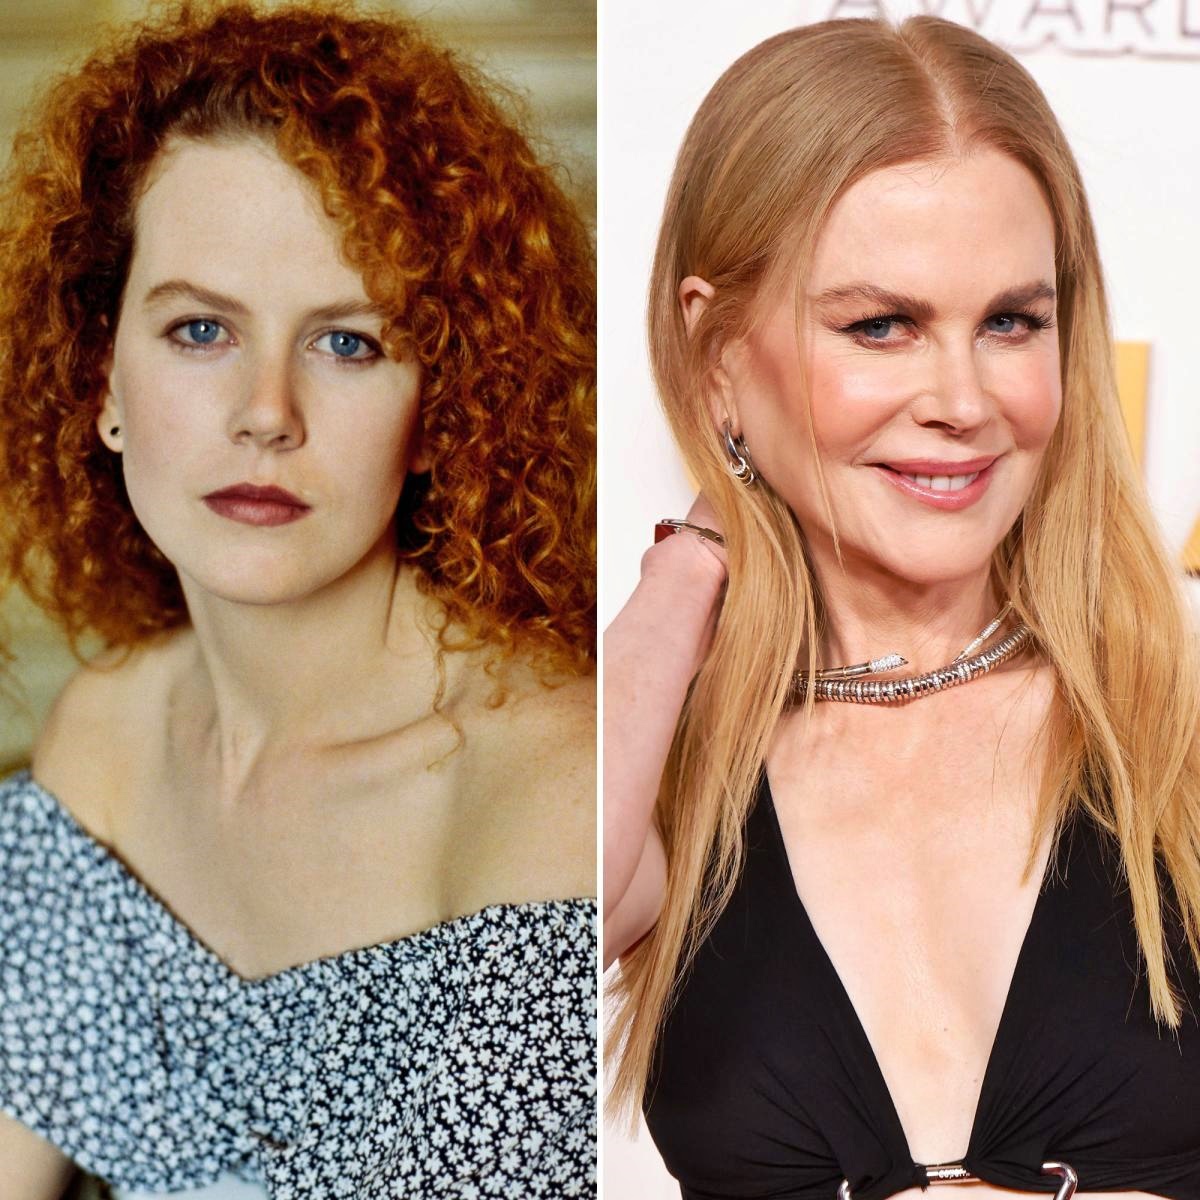 Ijesztő, mit tett magával: Nicole Kidman arca teljesen felismerhetetlen lett